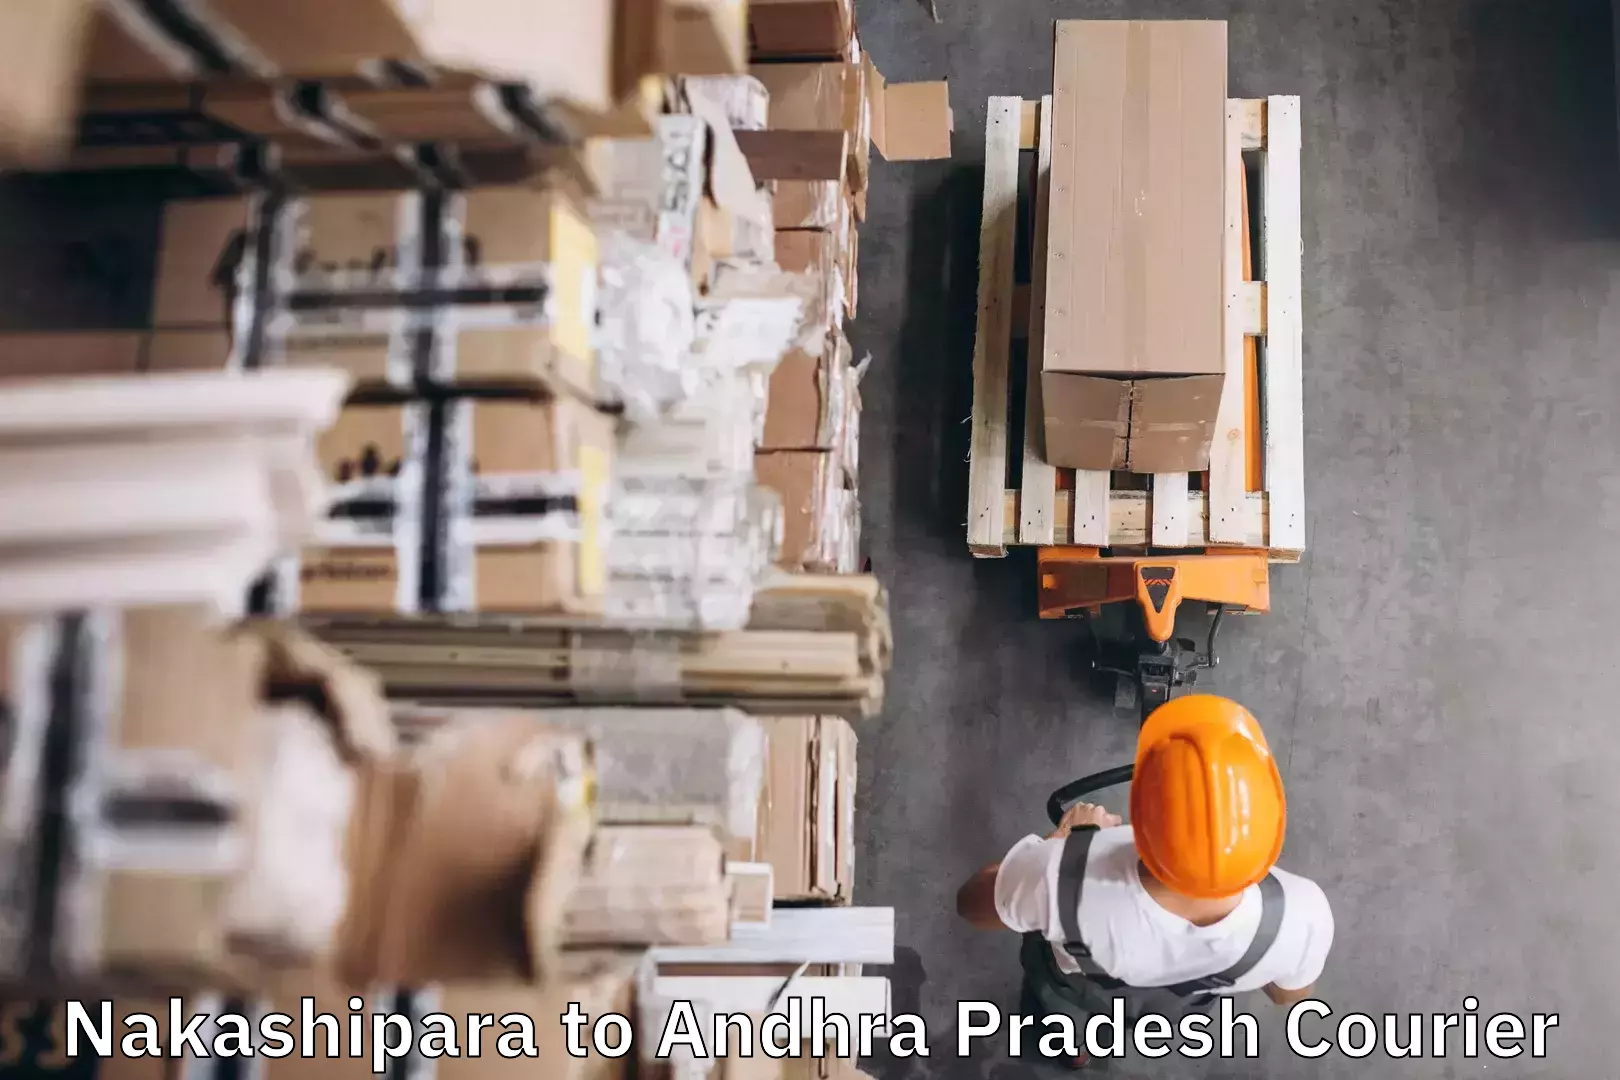 Baggage courier rates calculator Nakashipara to Andhra Pradesh